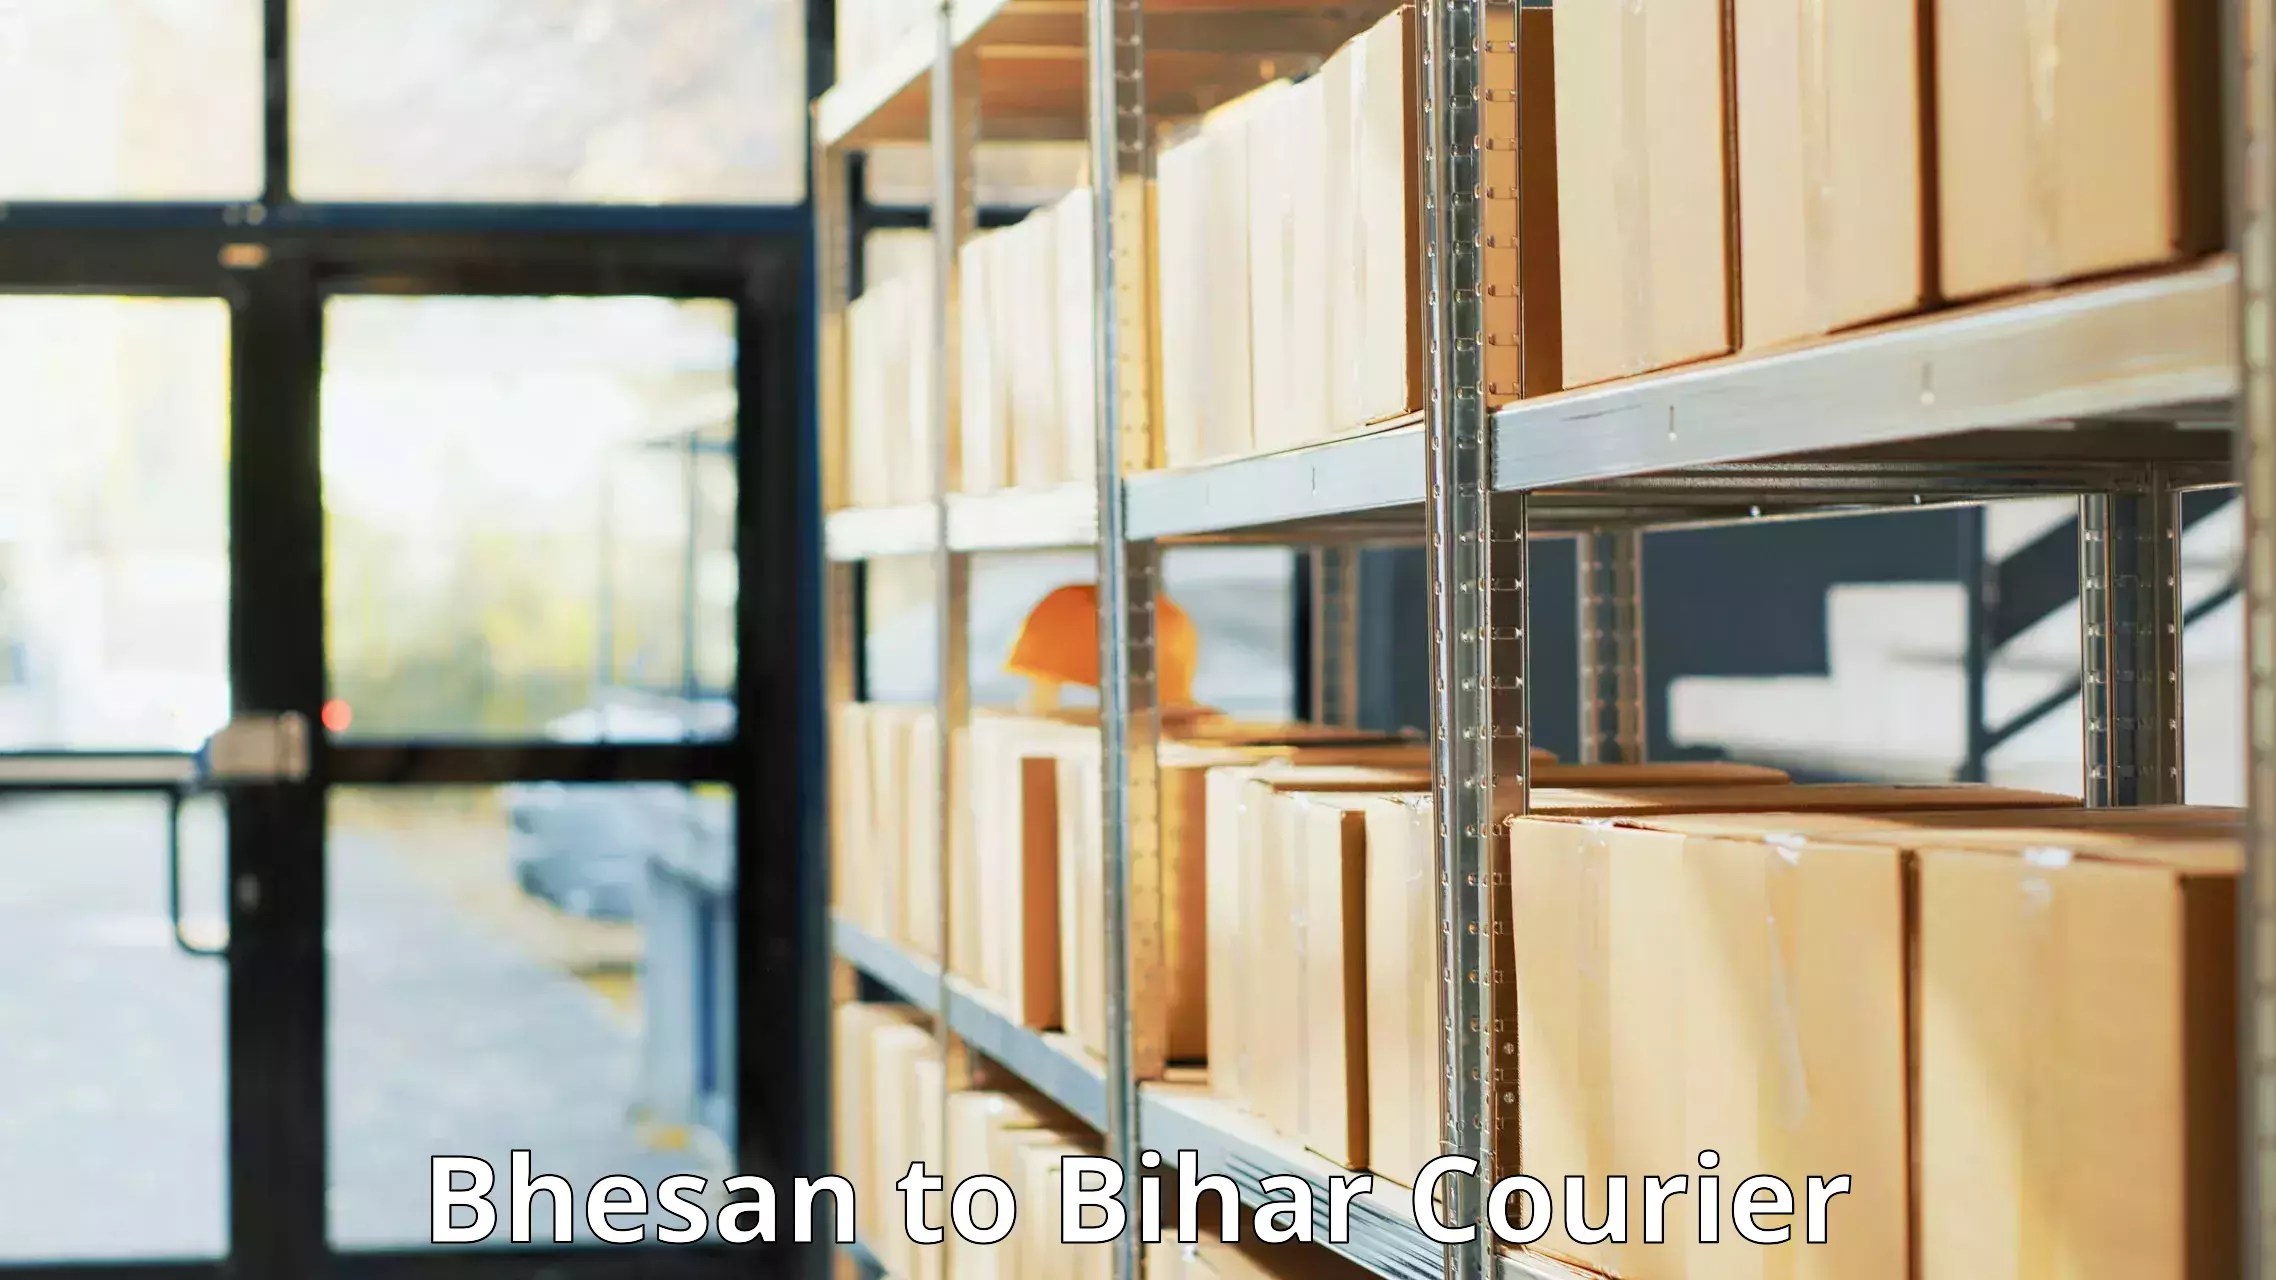 High-efficiency logistics in Bhesan to Bhabua